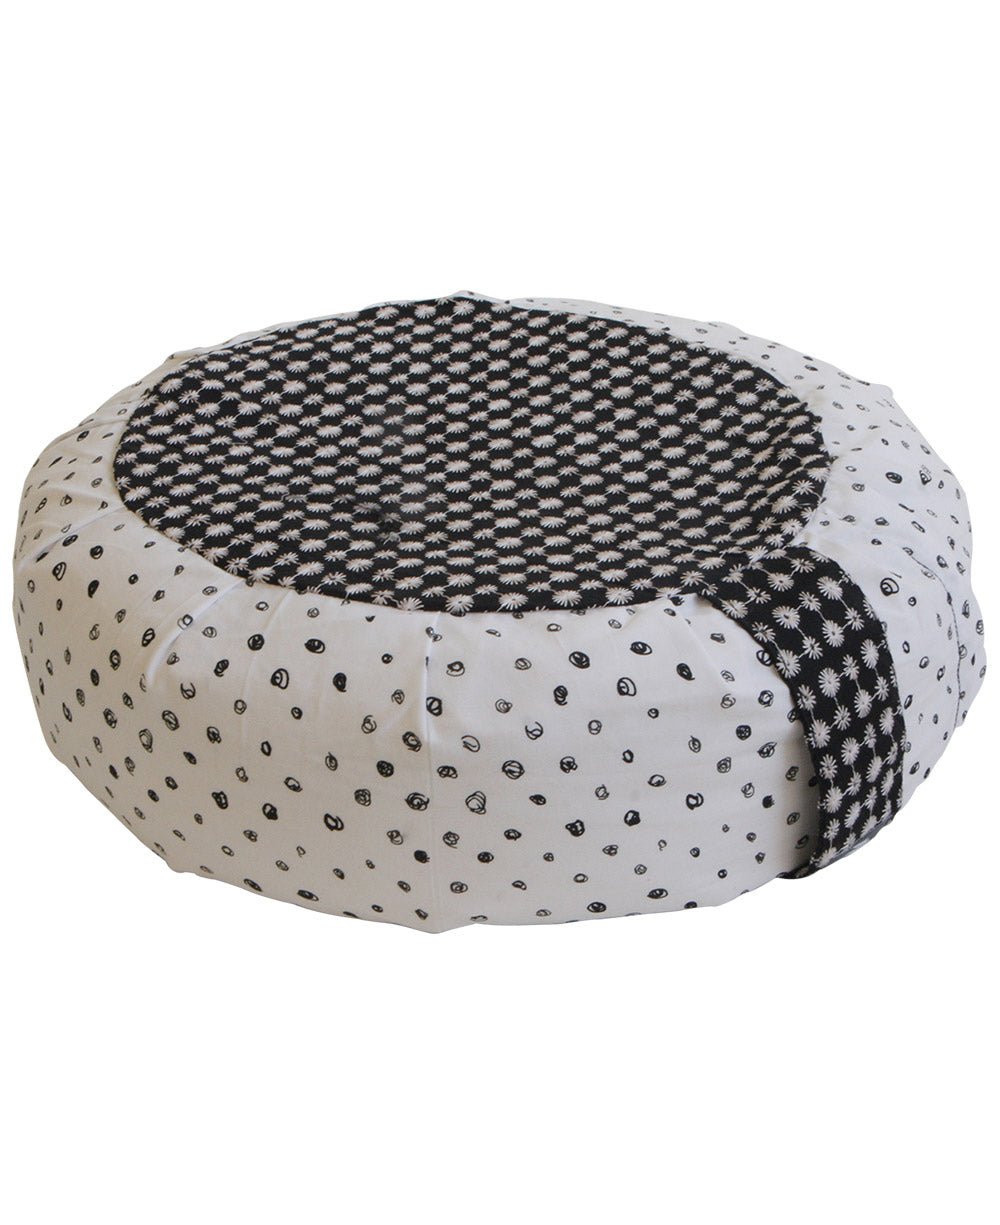 Black and White Mixed Pattern Zafu Cushion - Massage Cushions